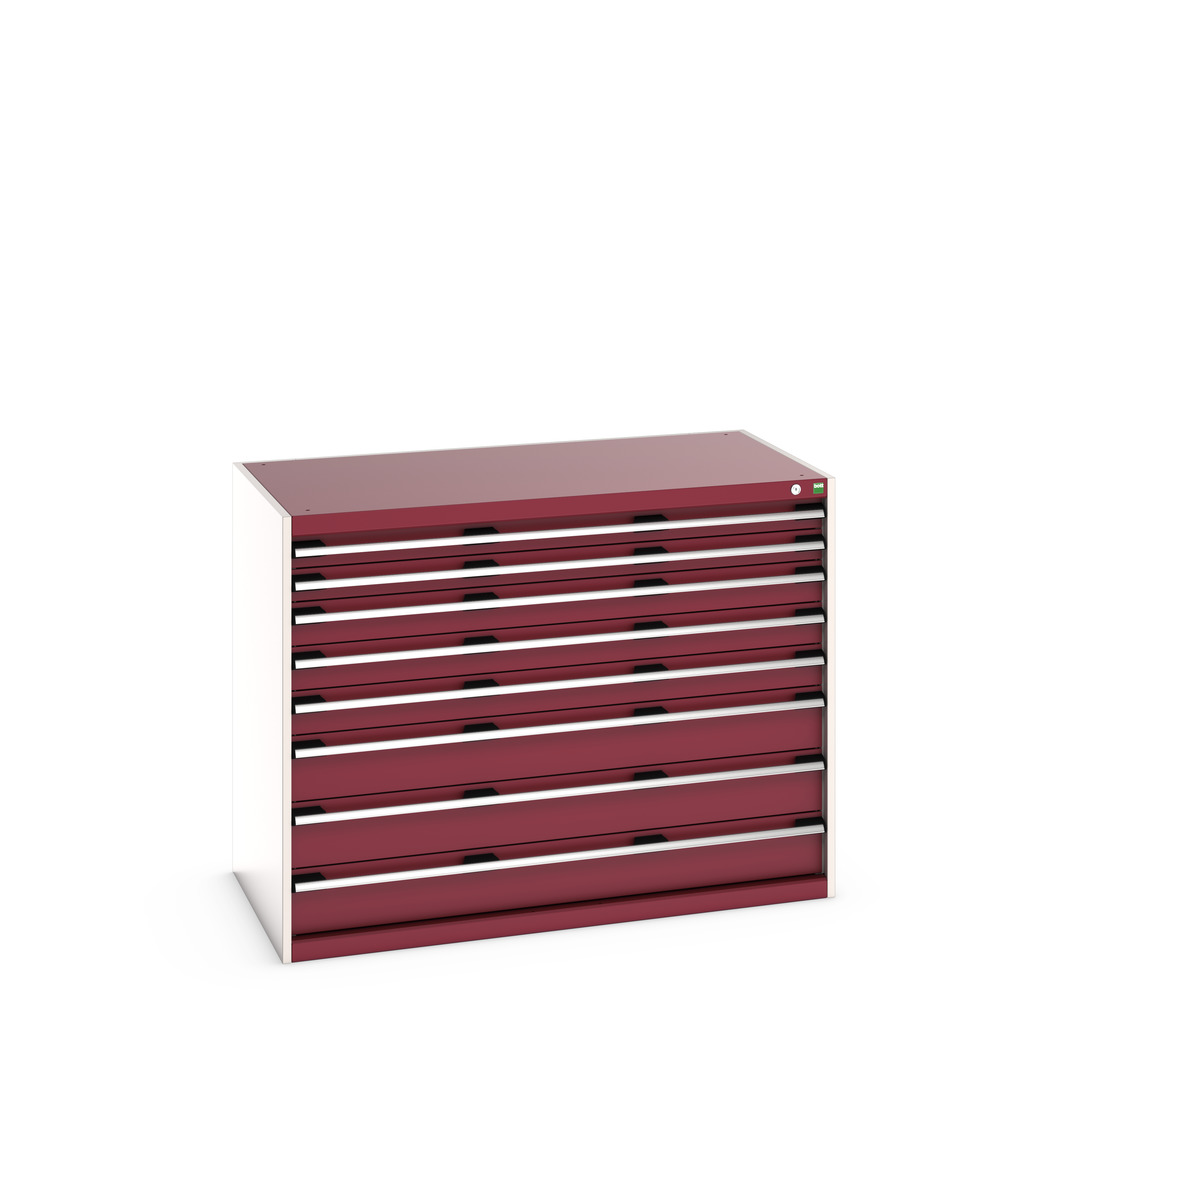 40030020.24V - cubio drawer cabinet